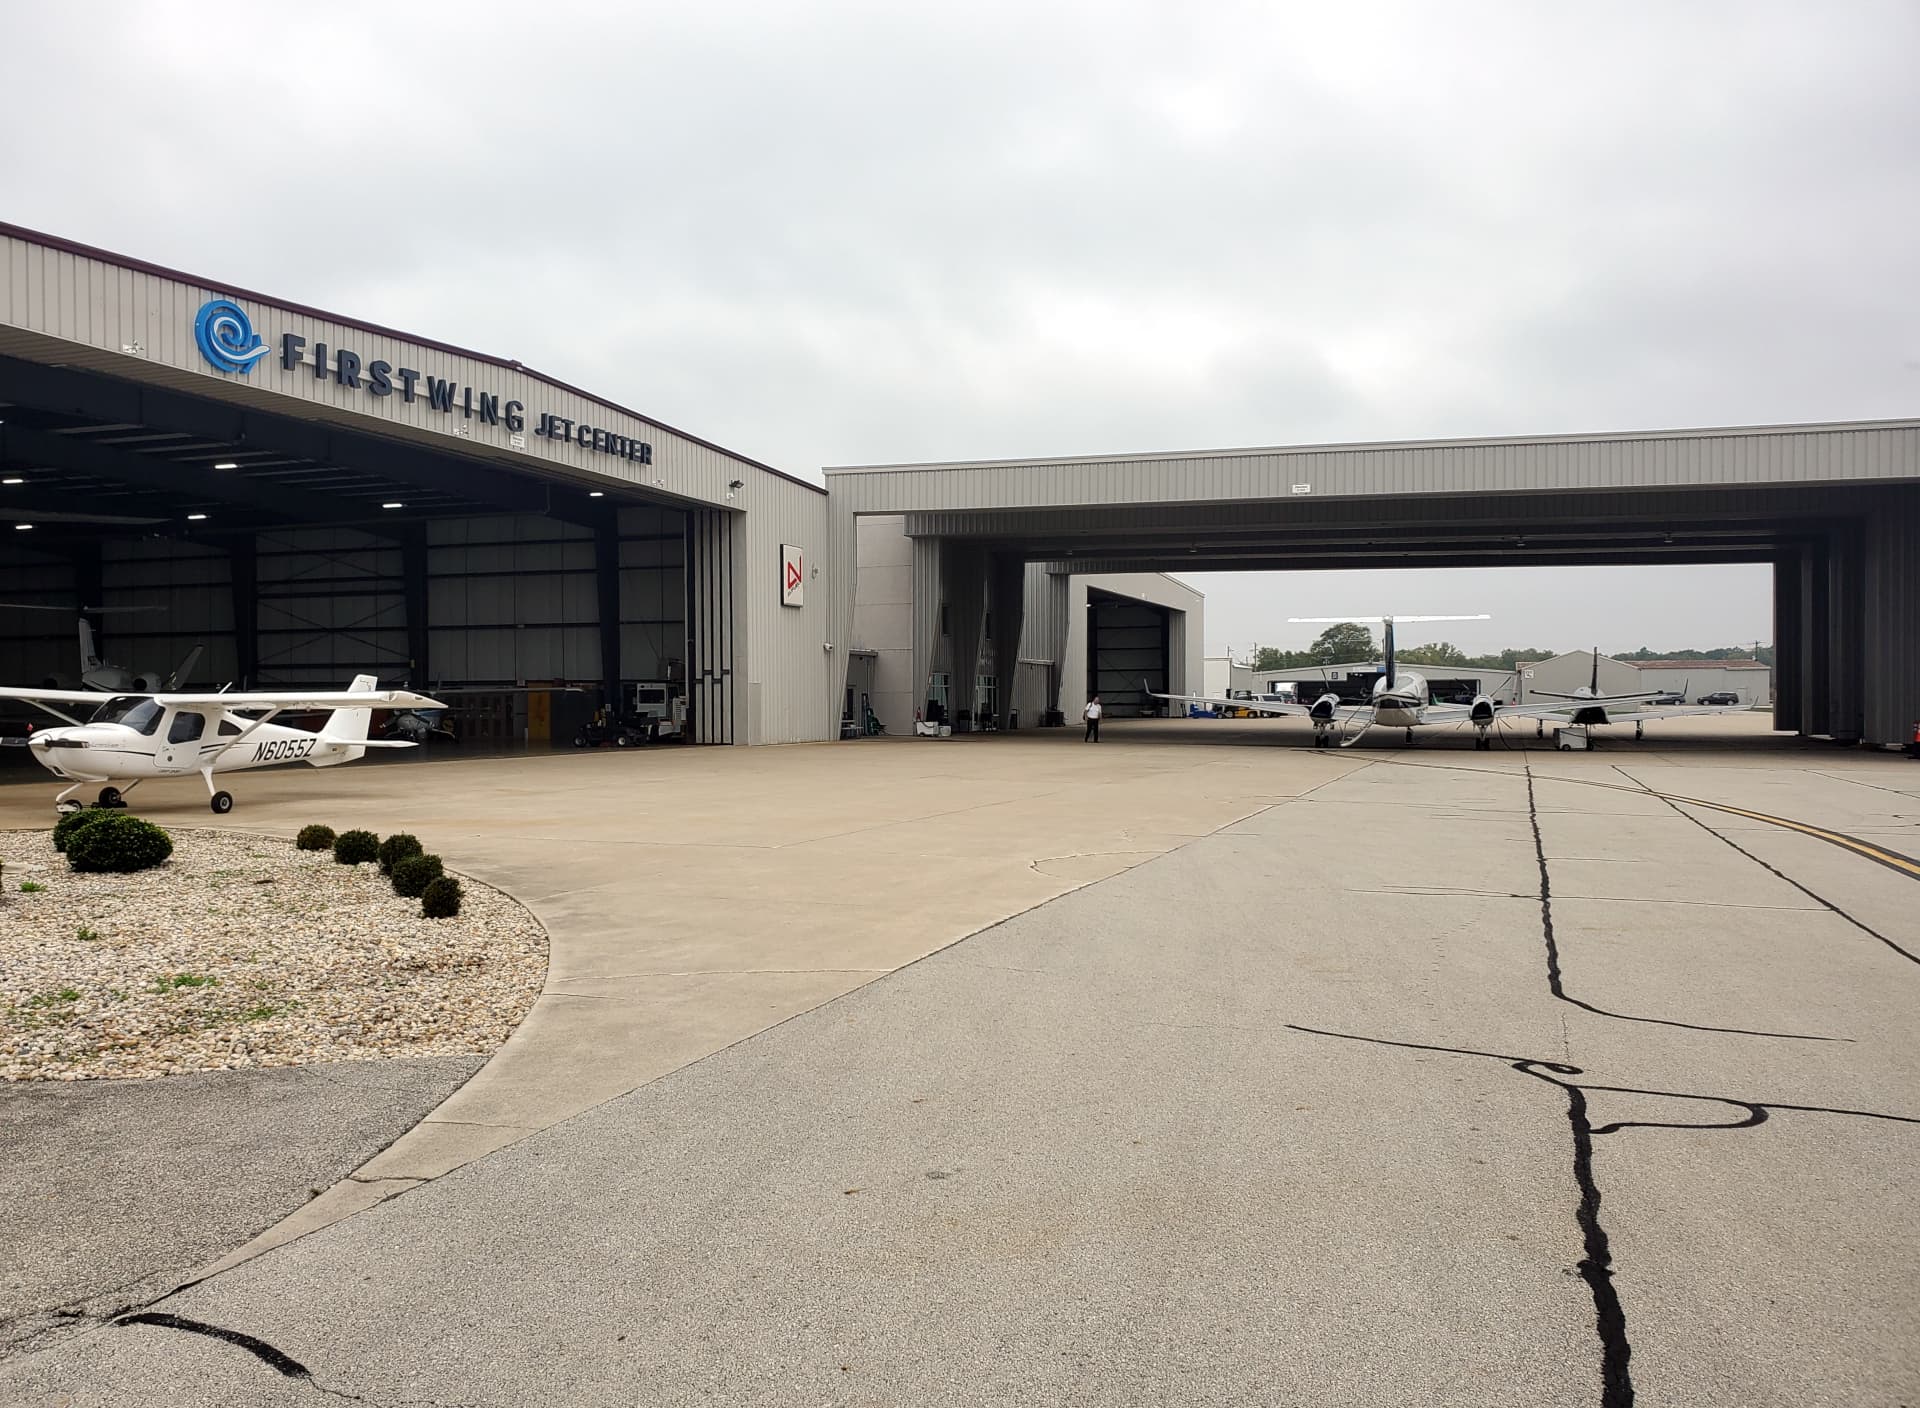 Firstwing Jet Center